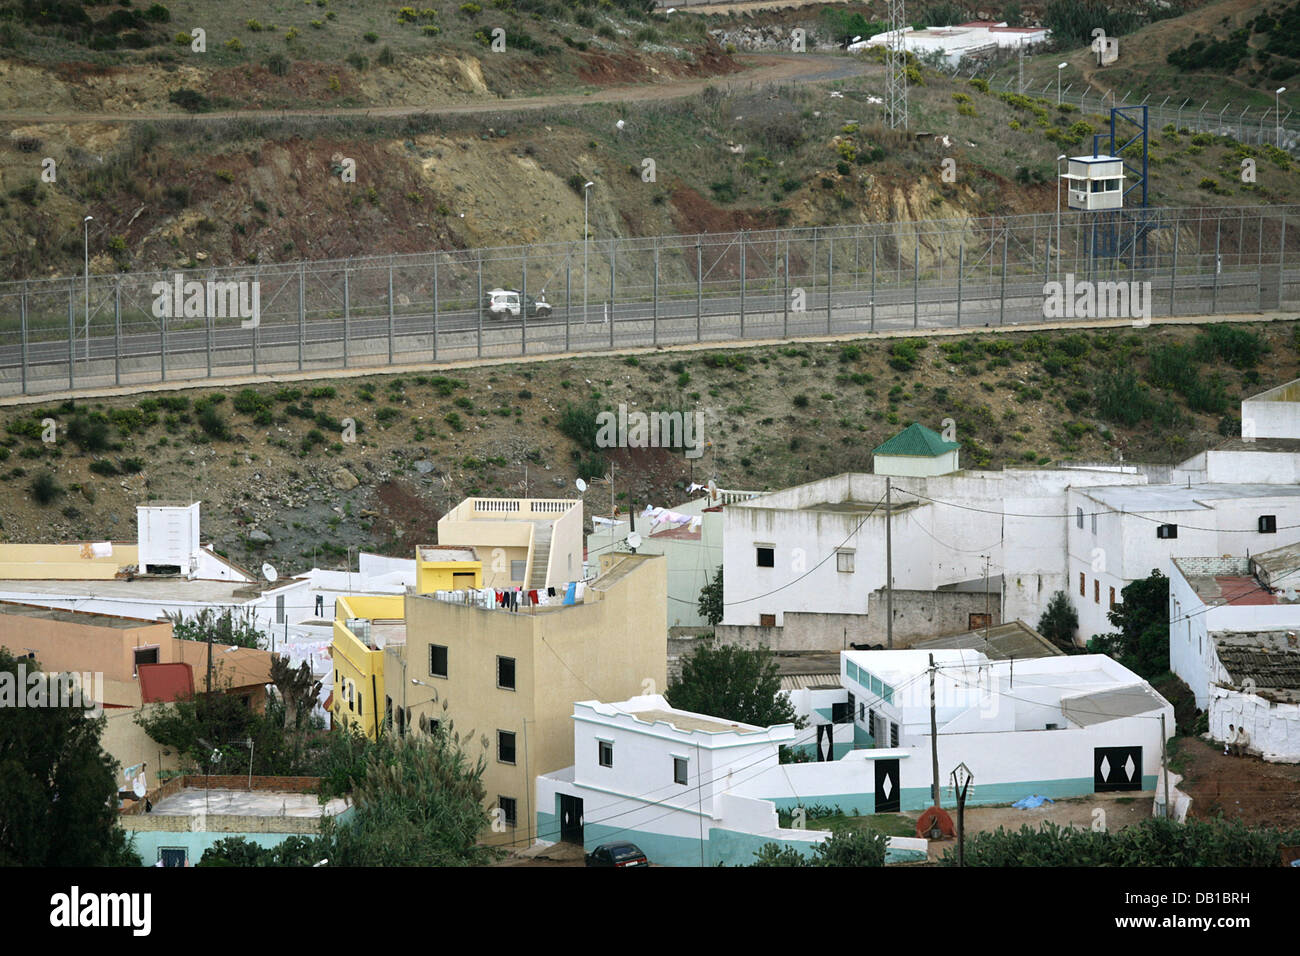 La foto mostra la recinzione di confine che separa le enclave spagnole di  Ceuta (fondo) dal Marocco, Spagna, 13 ottobre 2007. Foto: Bodo segna Foto  stock - Alamy